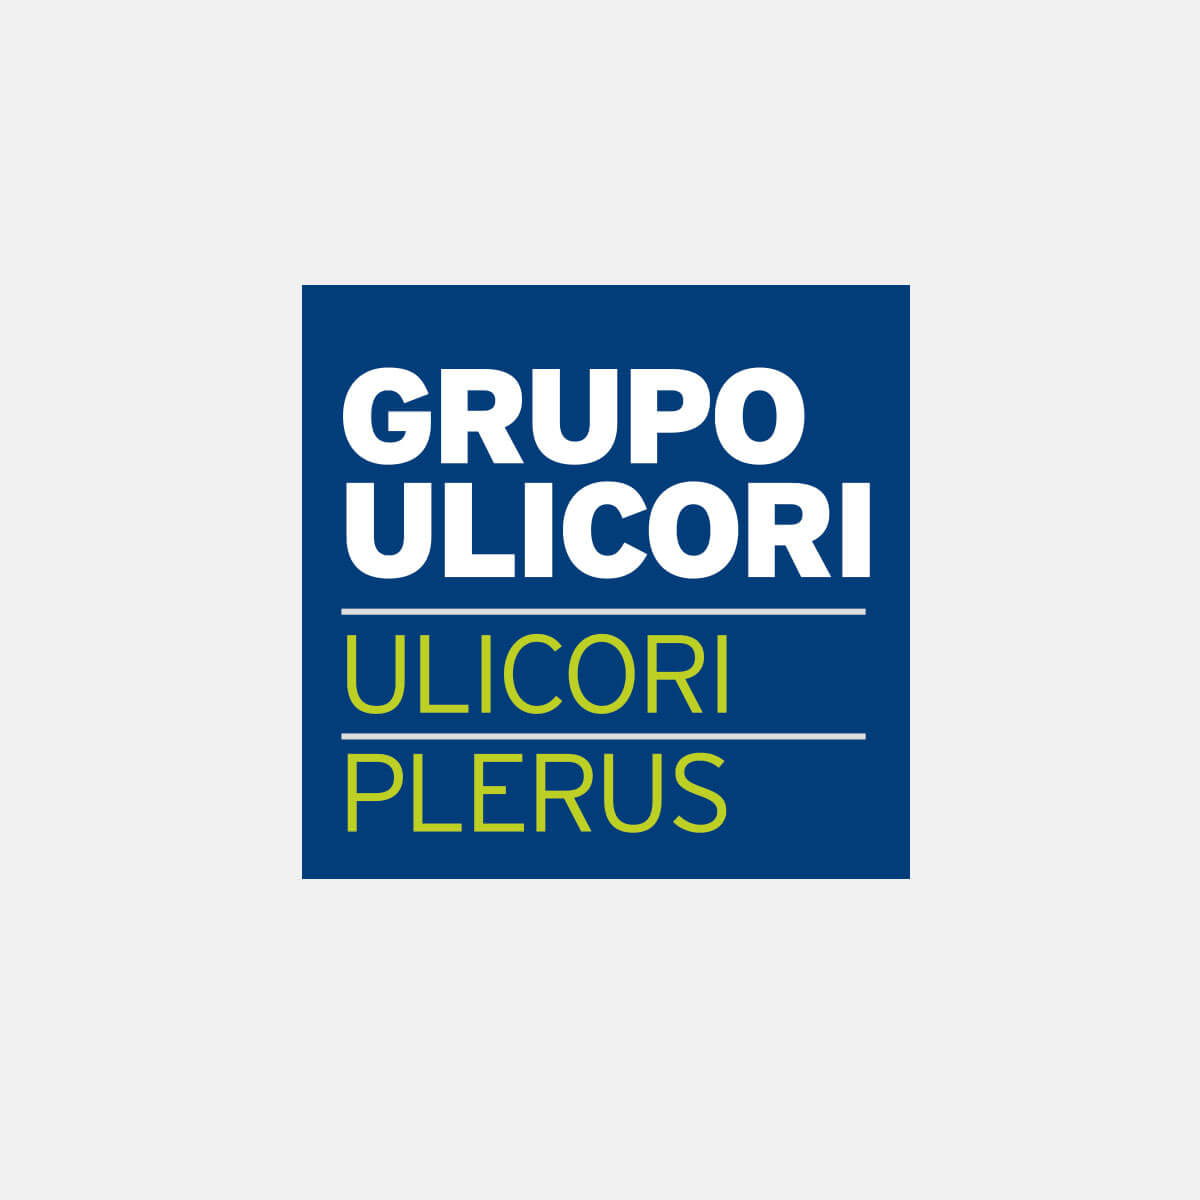 Proyectos-destacados-Grupo-Ulicori-logo